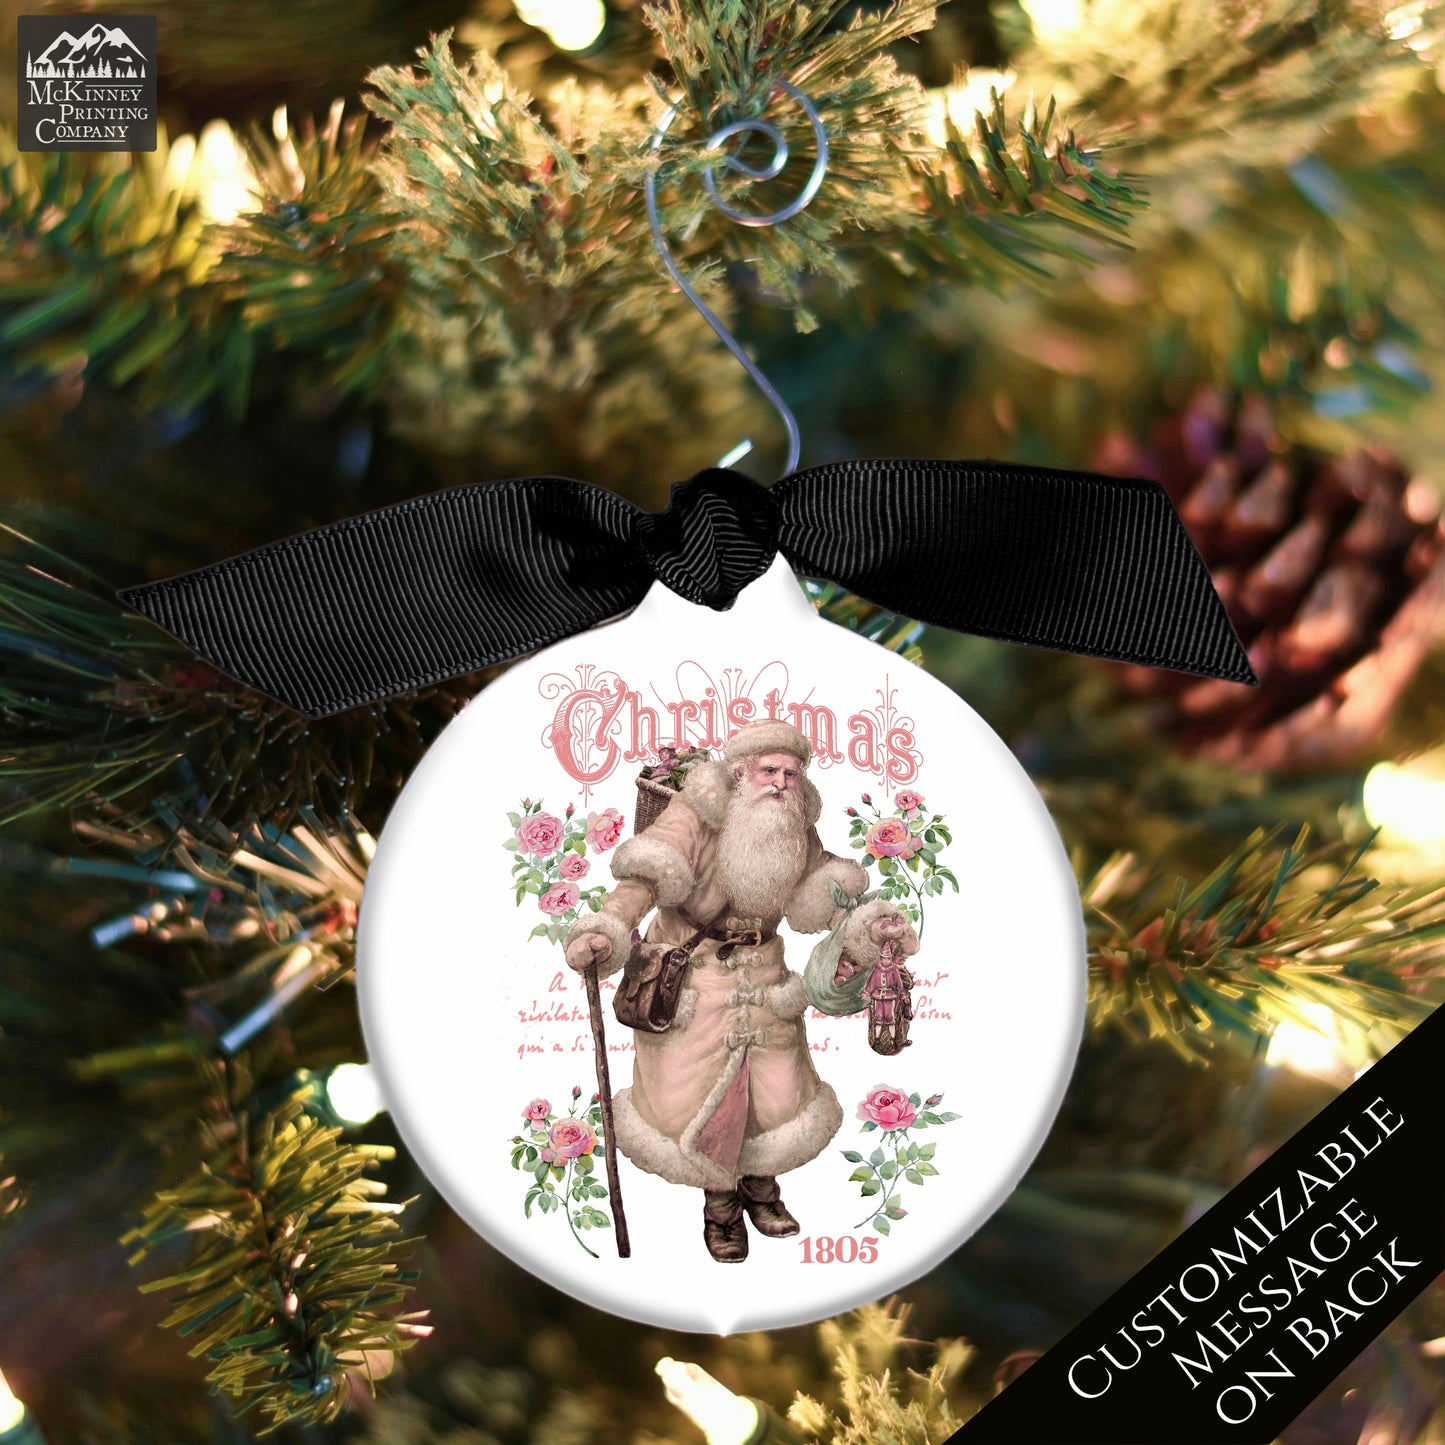 Victorian Christmas Ornaments - Vintage, Personalized, Santa, Décor